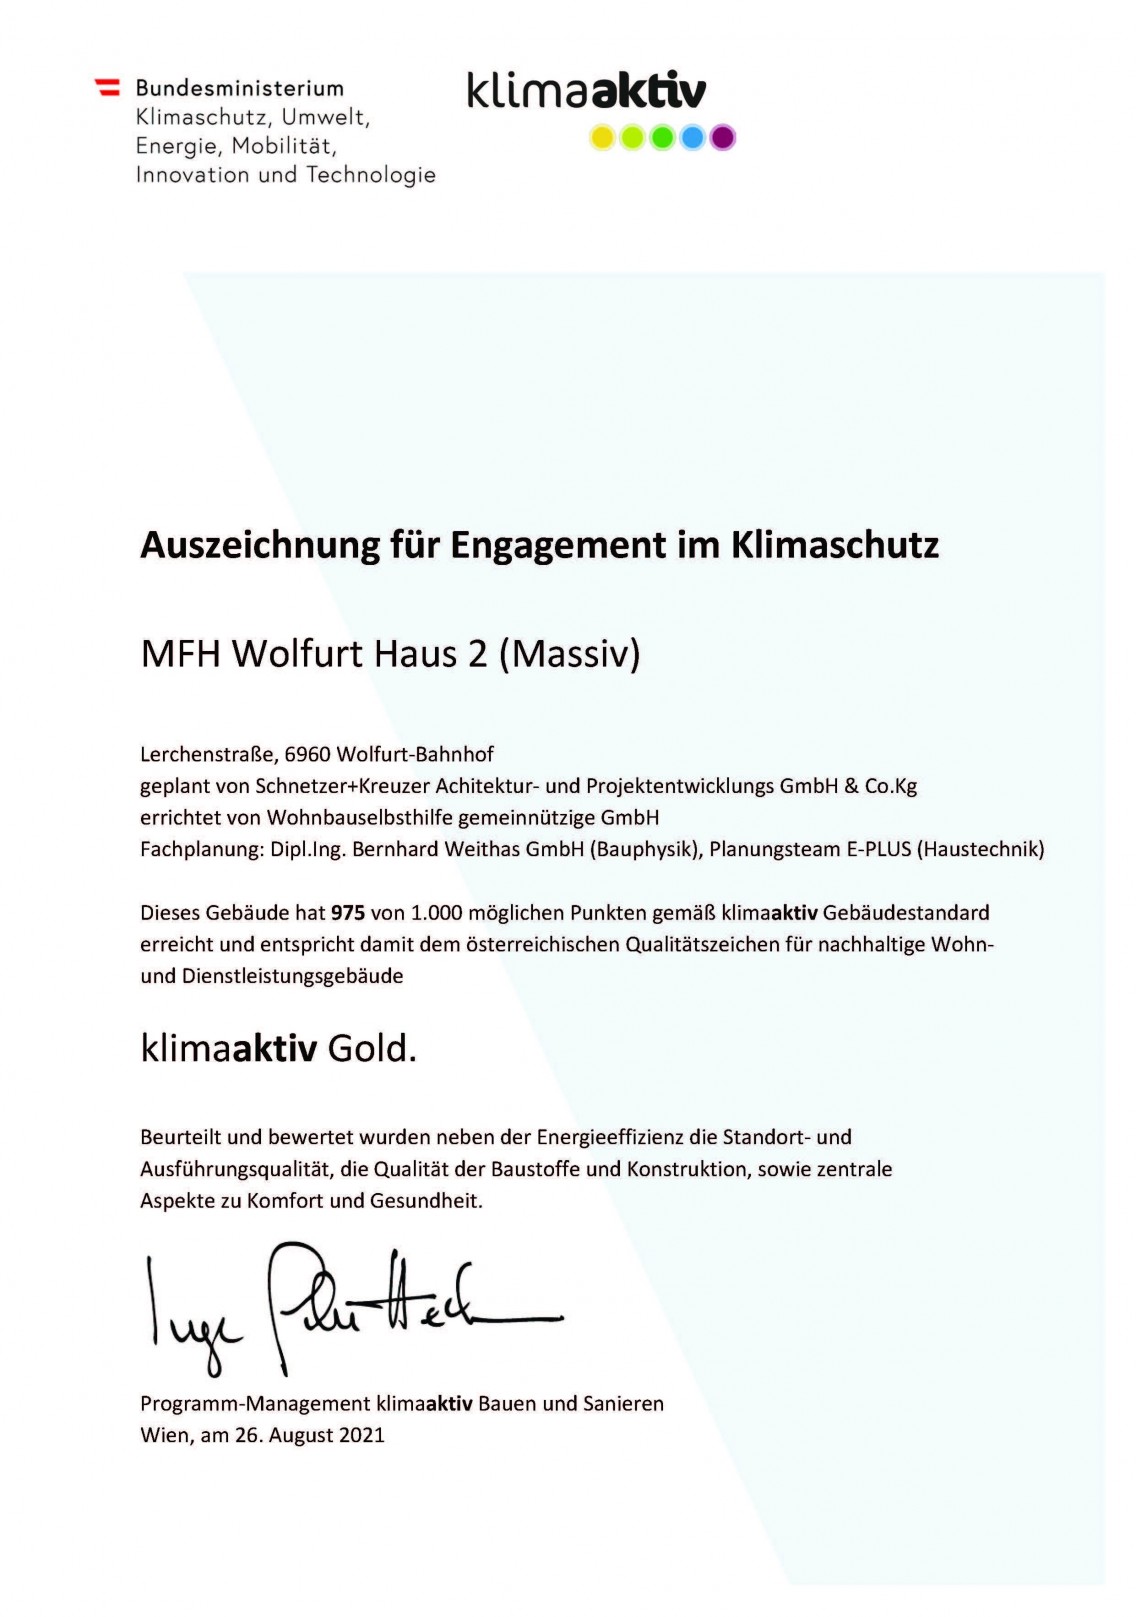 Auszeichnung für Engagement im Klimaschutz - MFH Wolfurt Haus 2 (Massiv)